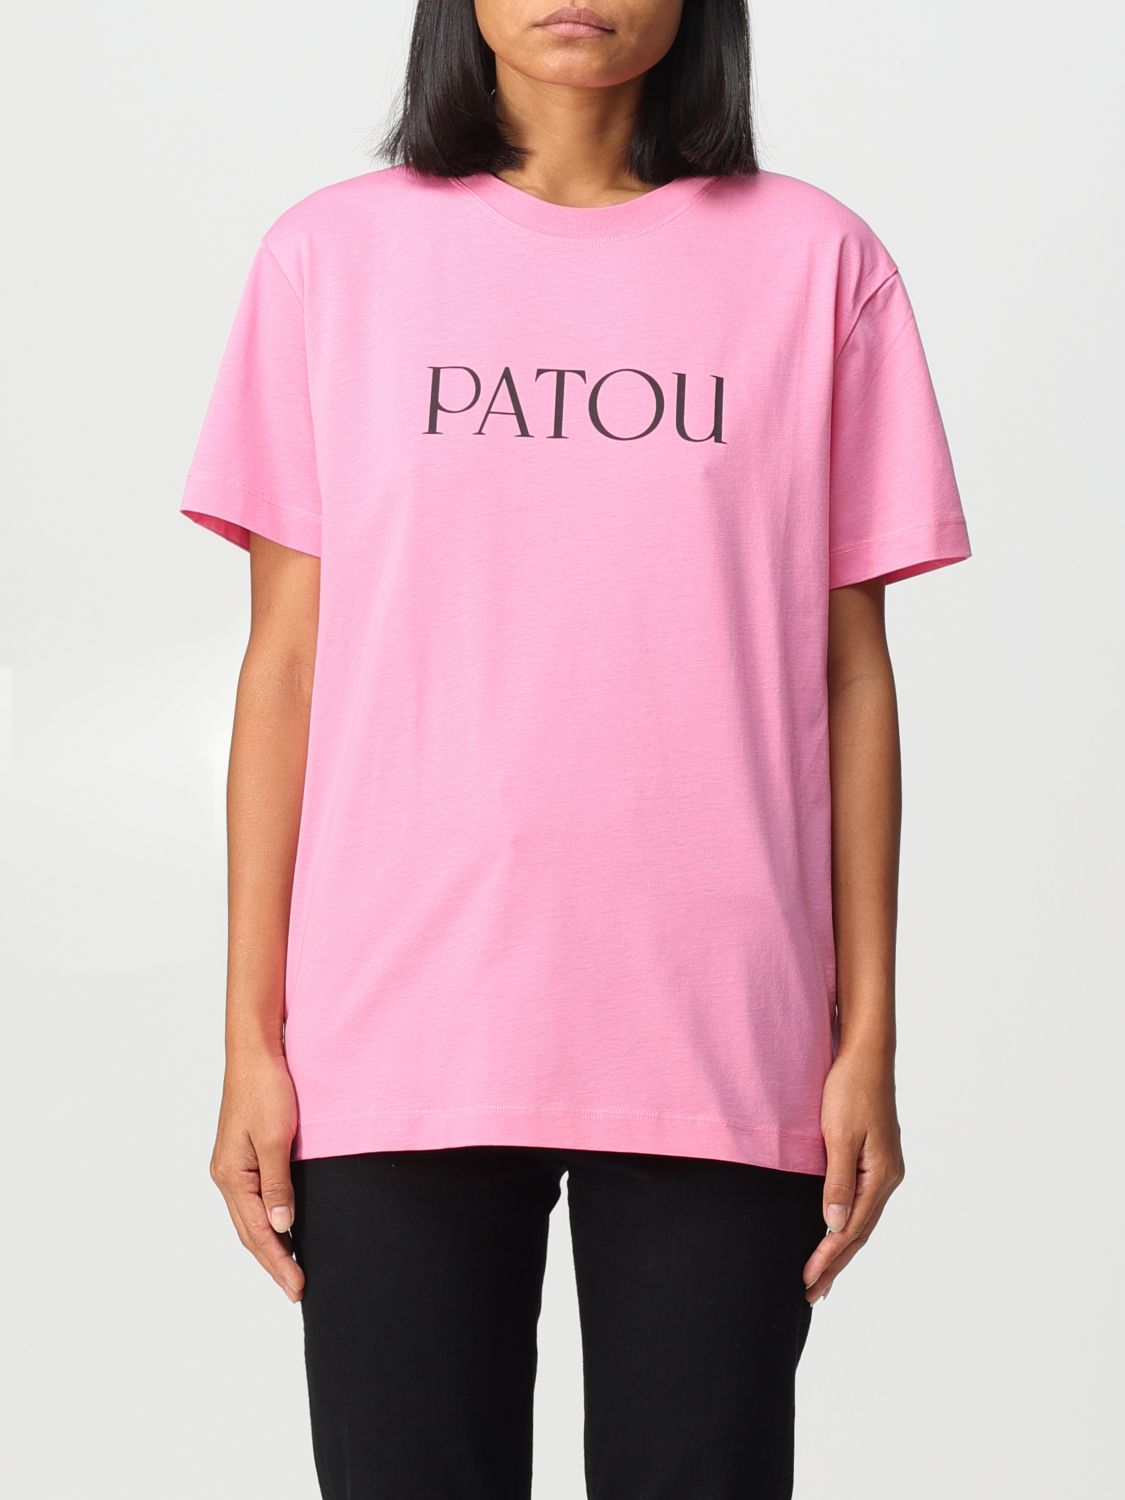 T恤 PATOU 女士 颜色 粉色